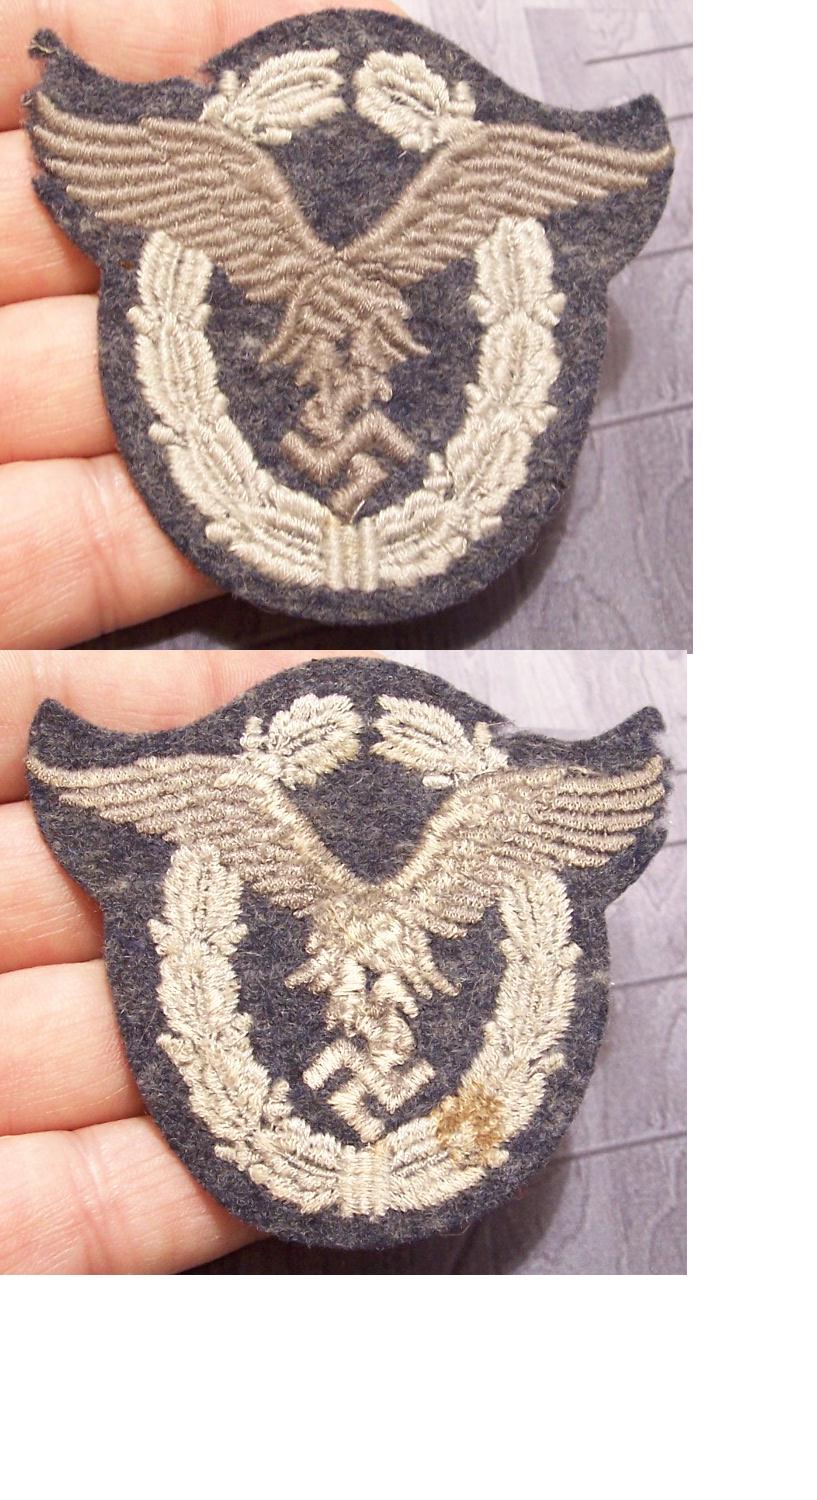 Pilot's badge in Cloth